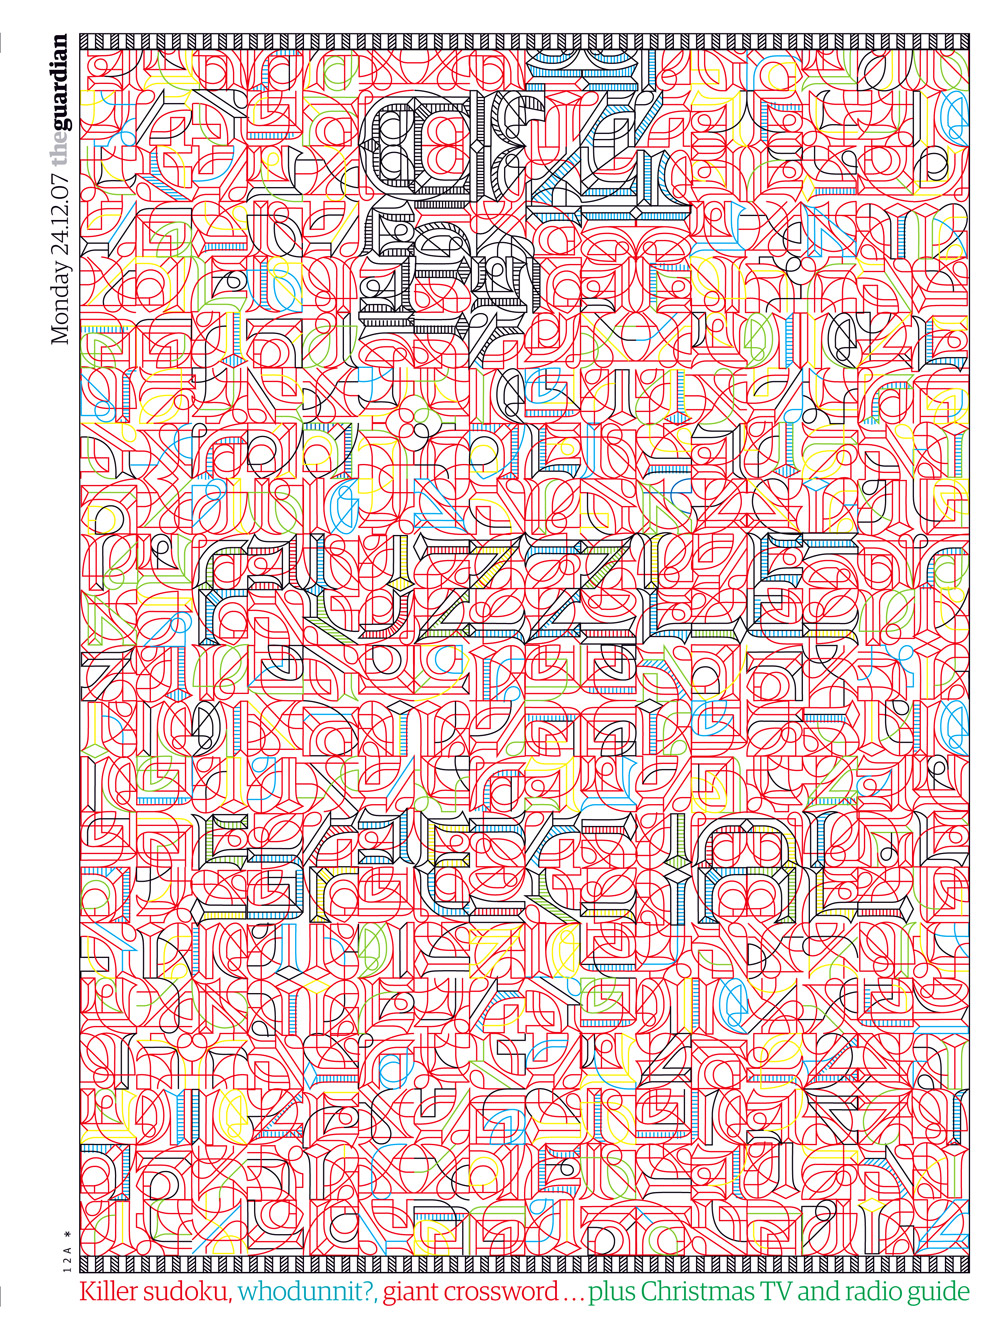 bantjes_2007_G2-puzzle